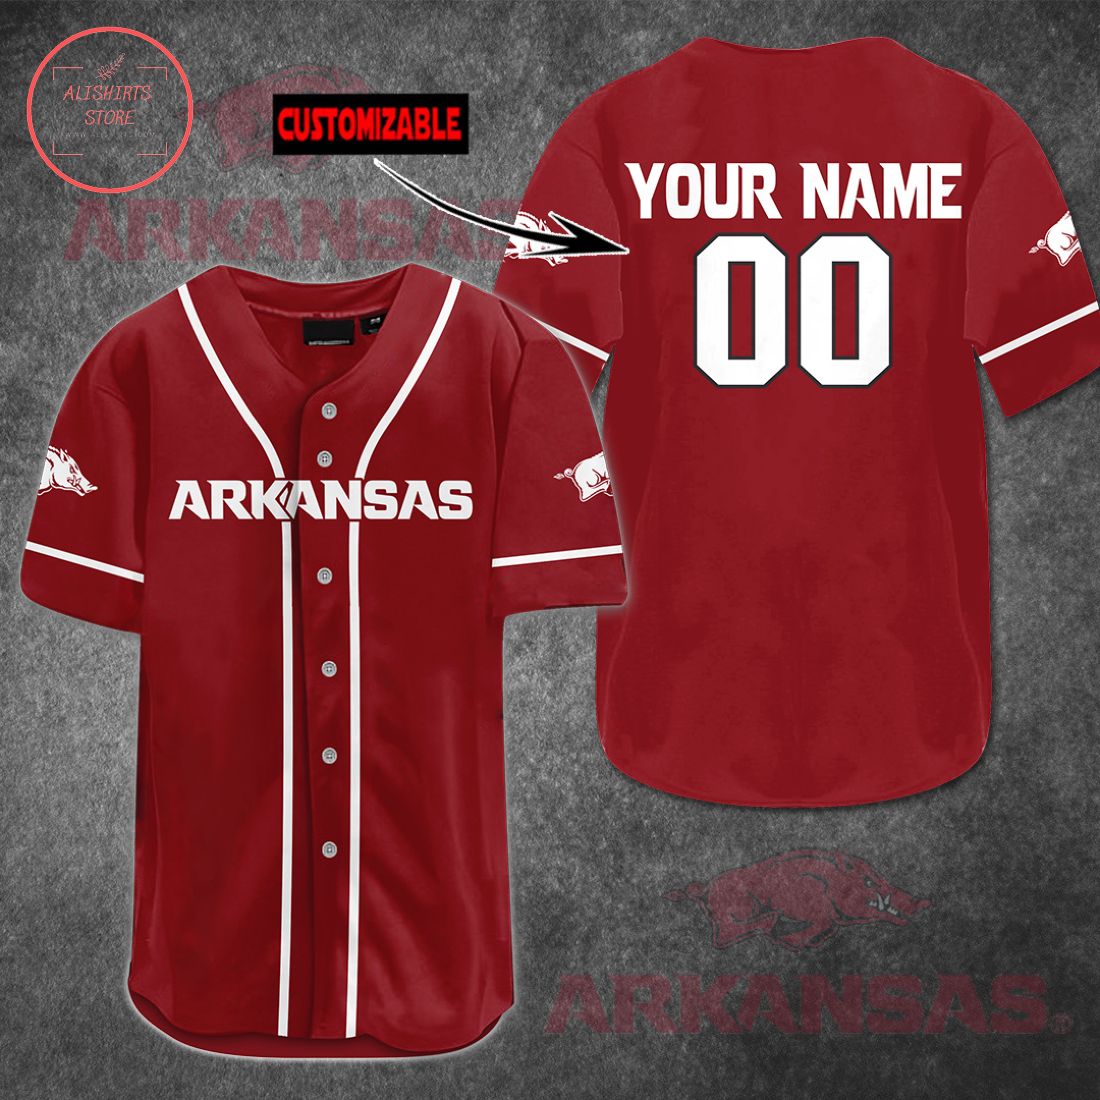 Arkansas Razorbacks football customized Baseball Jersey